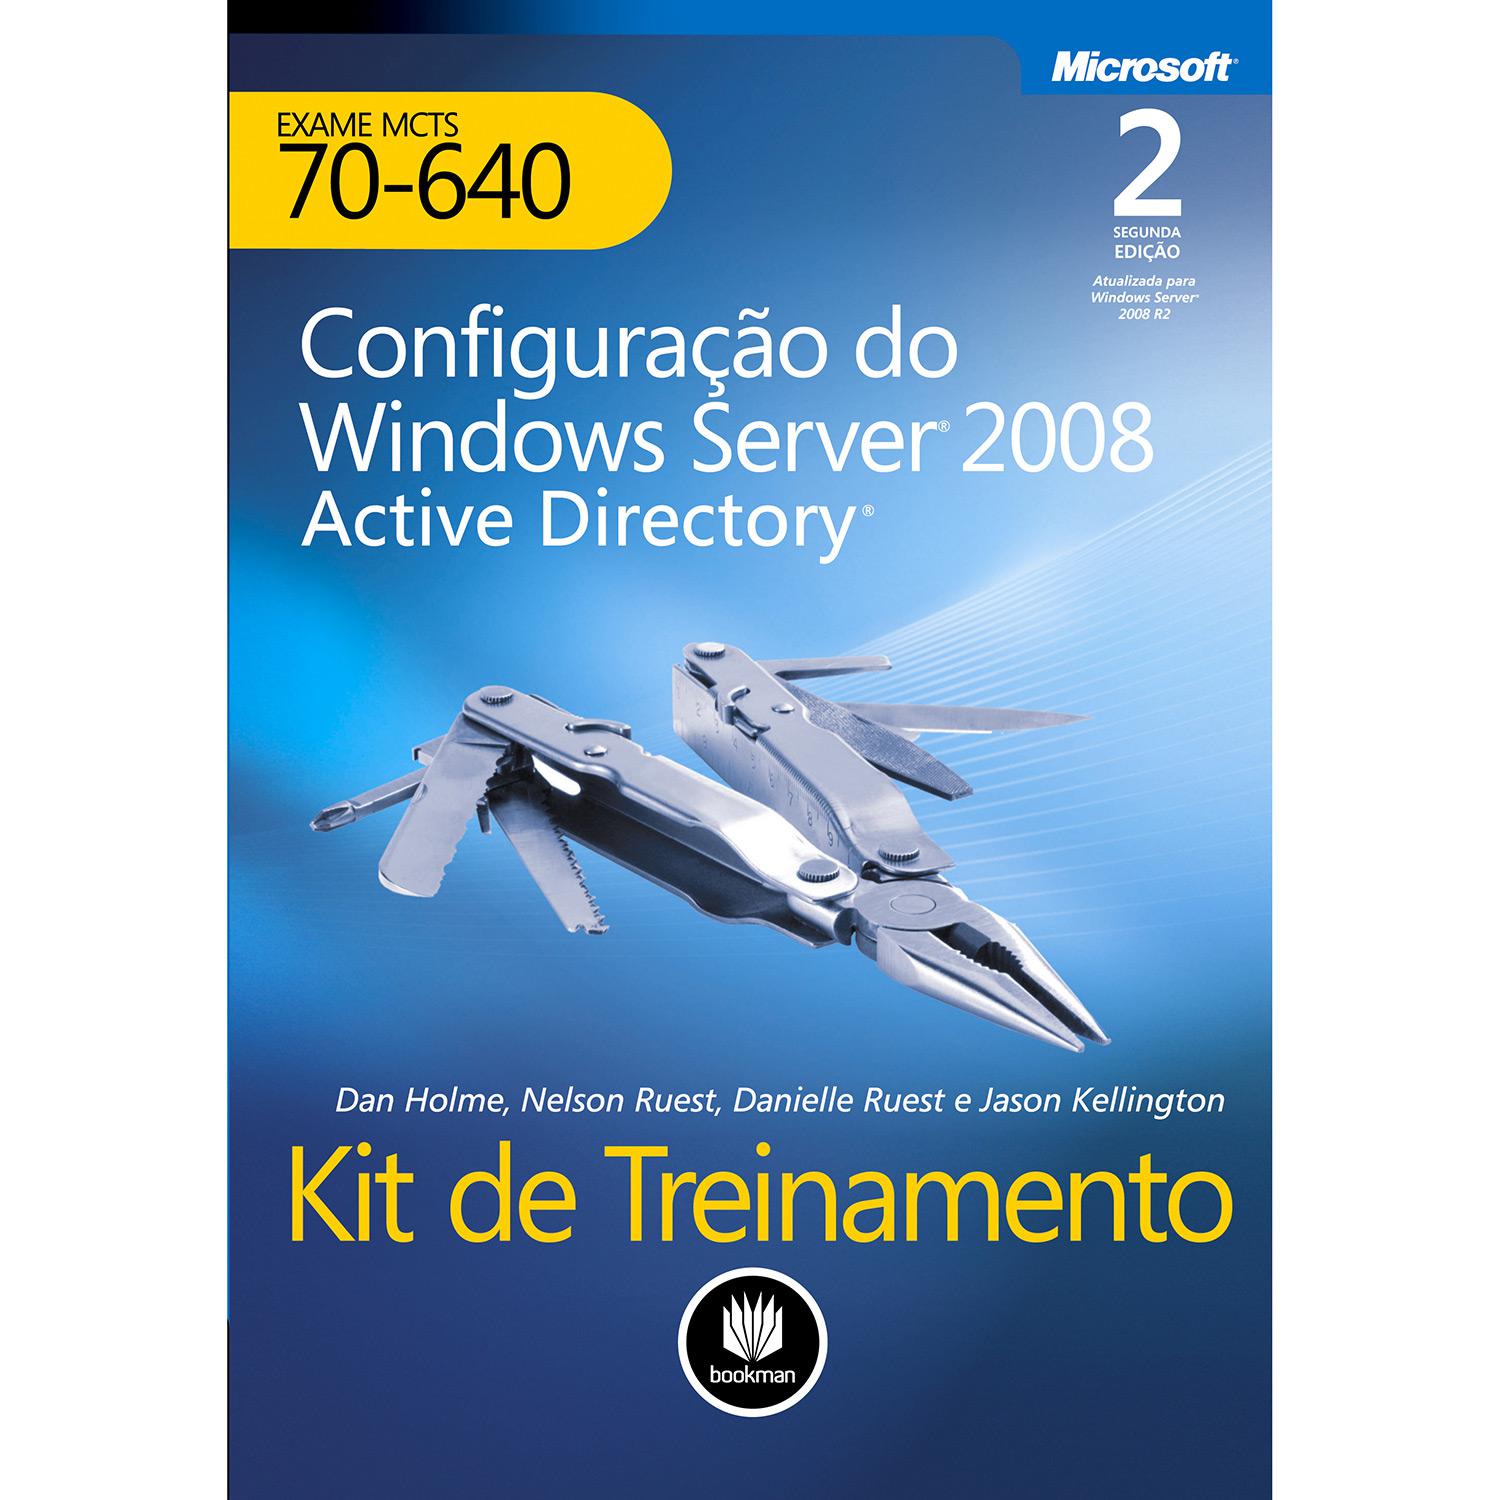 Livro - Kit de Treinamento: Configuração Do Windows Server 2008 Active Directory - Exame MCTS 70-640 é bom? Vale a pena?